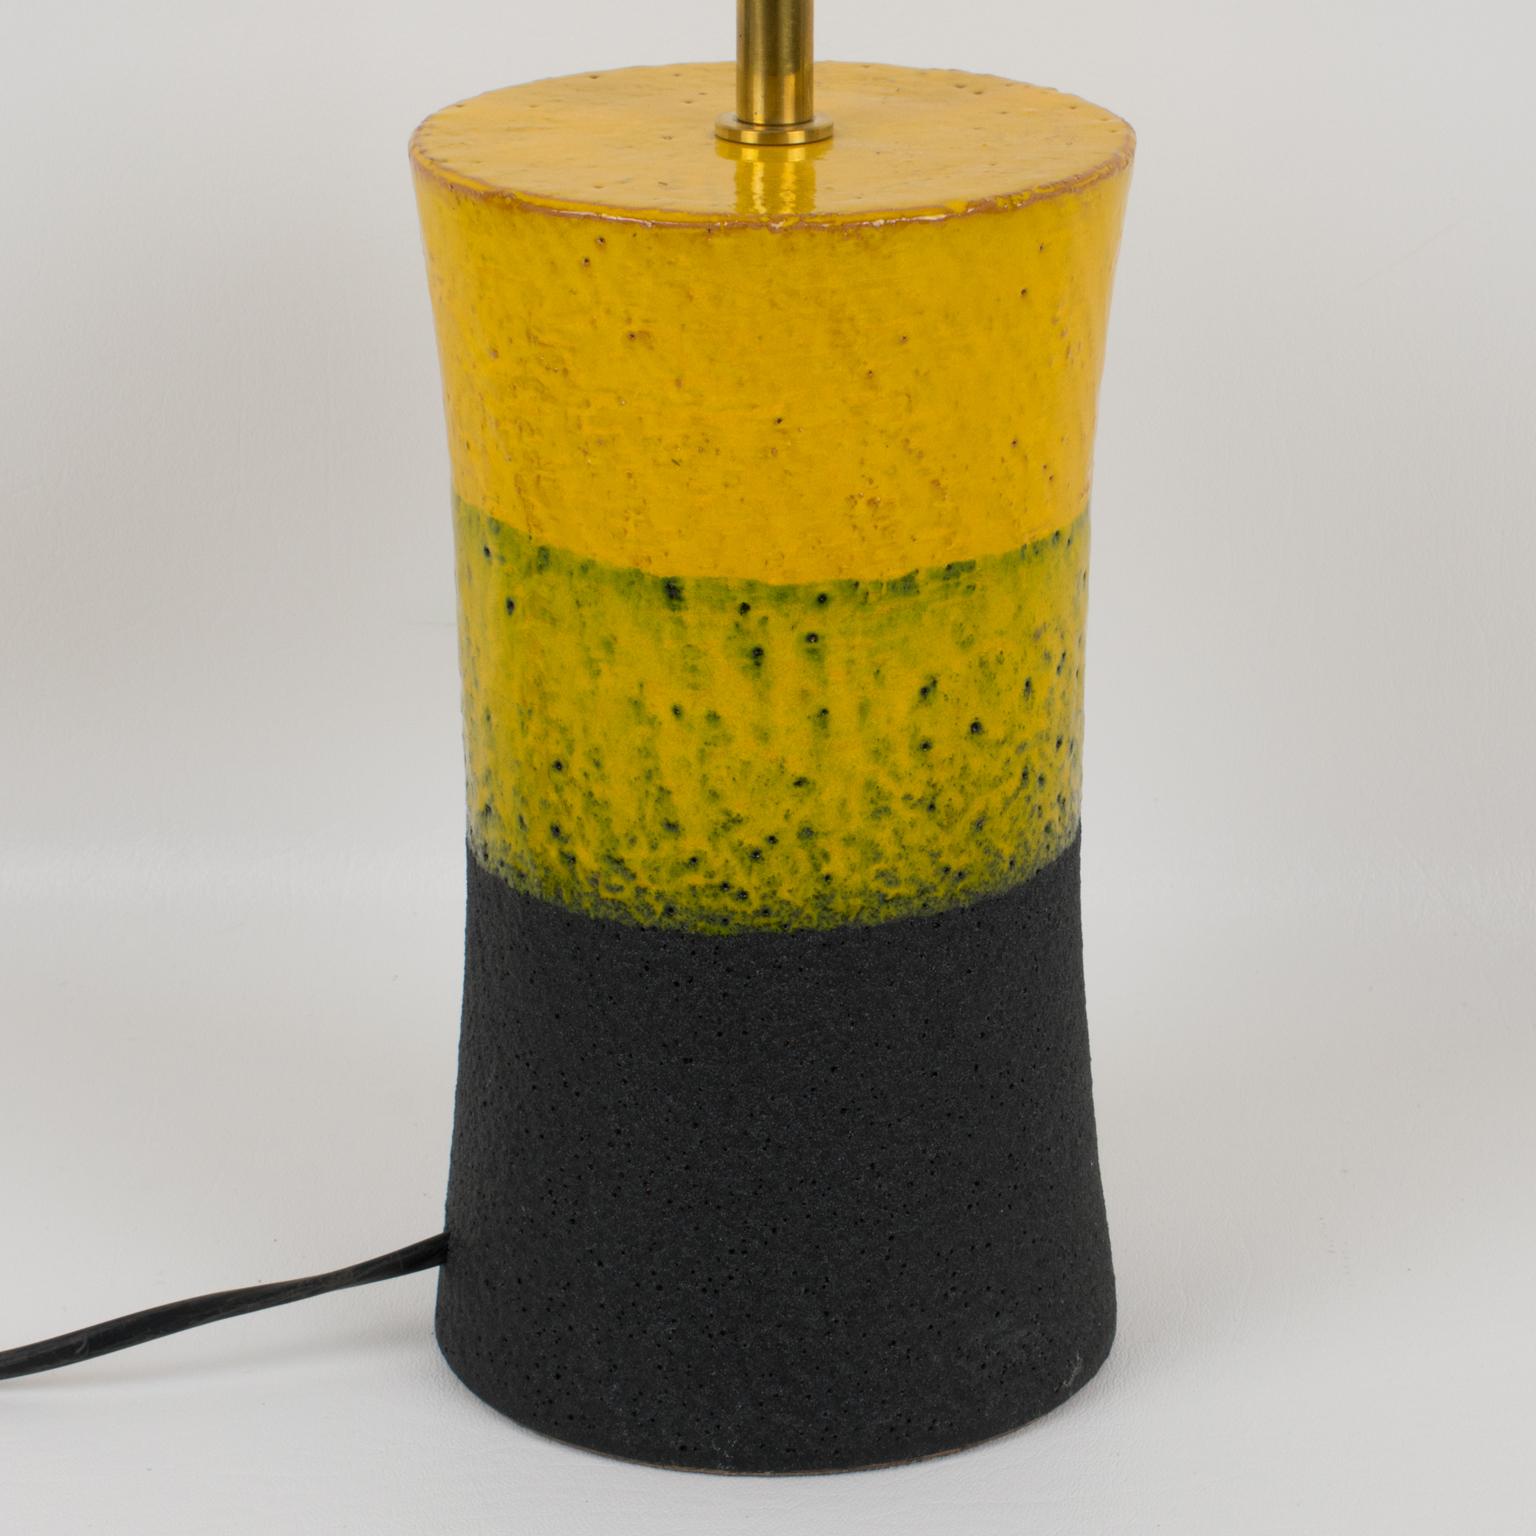 Aldo Londi for Bitossi Italy Mondrian Design Ceramic Table Lamp, 1960s In Excellent Condition For Sale In Atlanta, GA